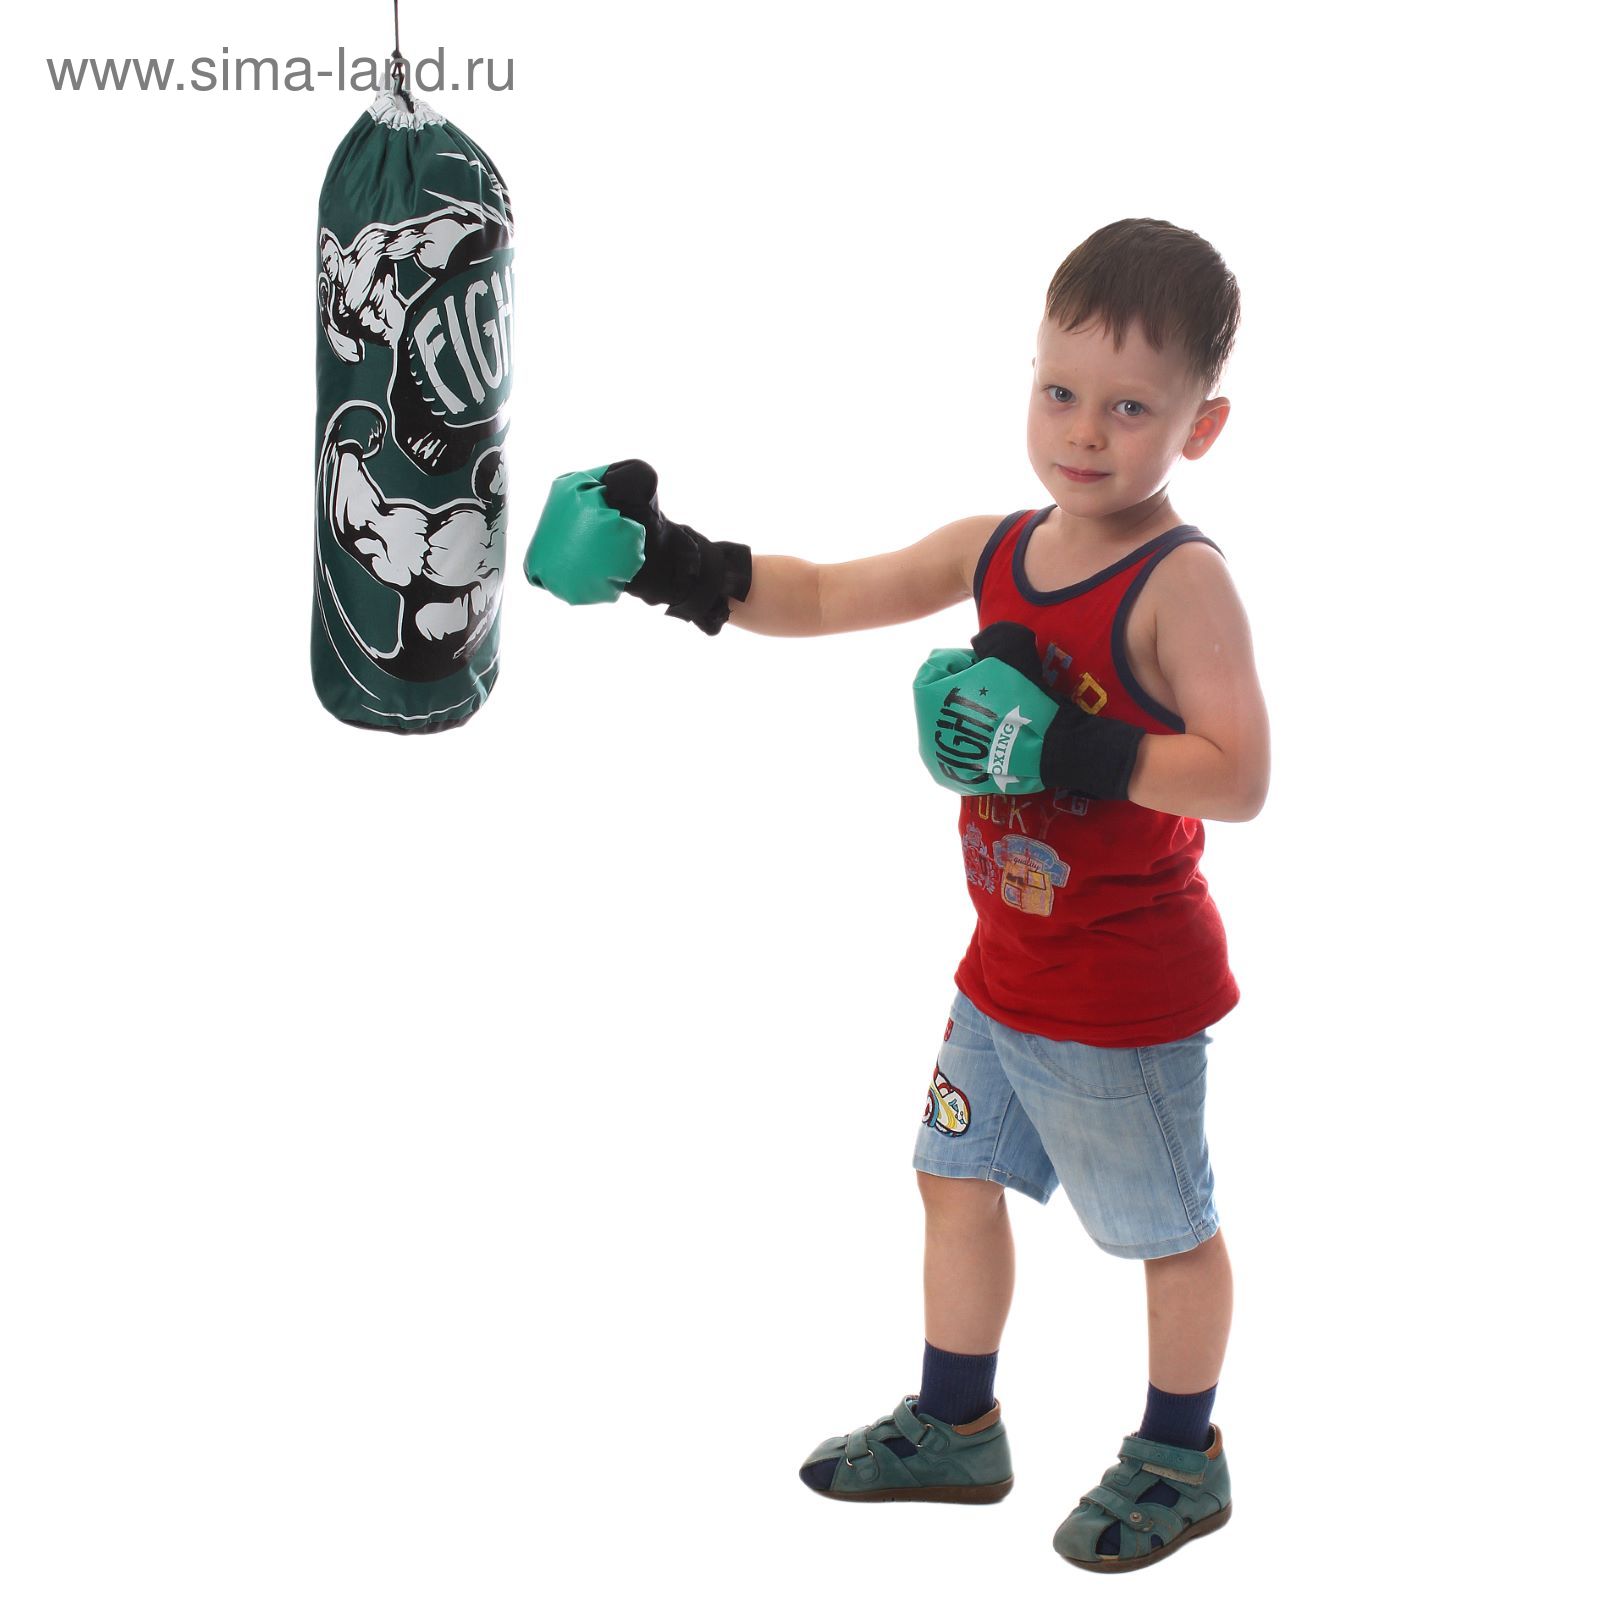 Боксерский набор "Fight boxing", груша и перчатки